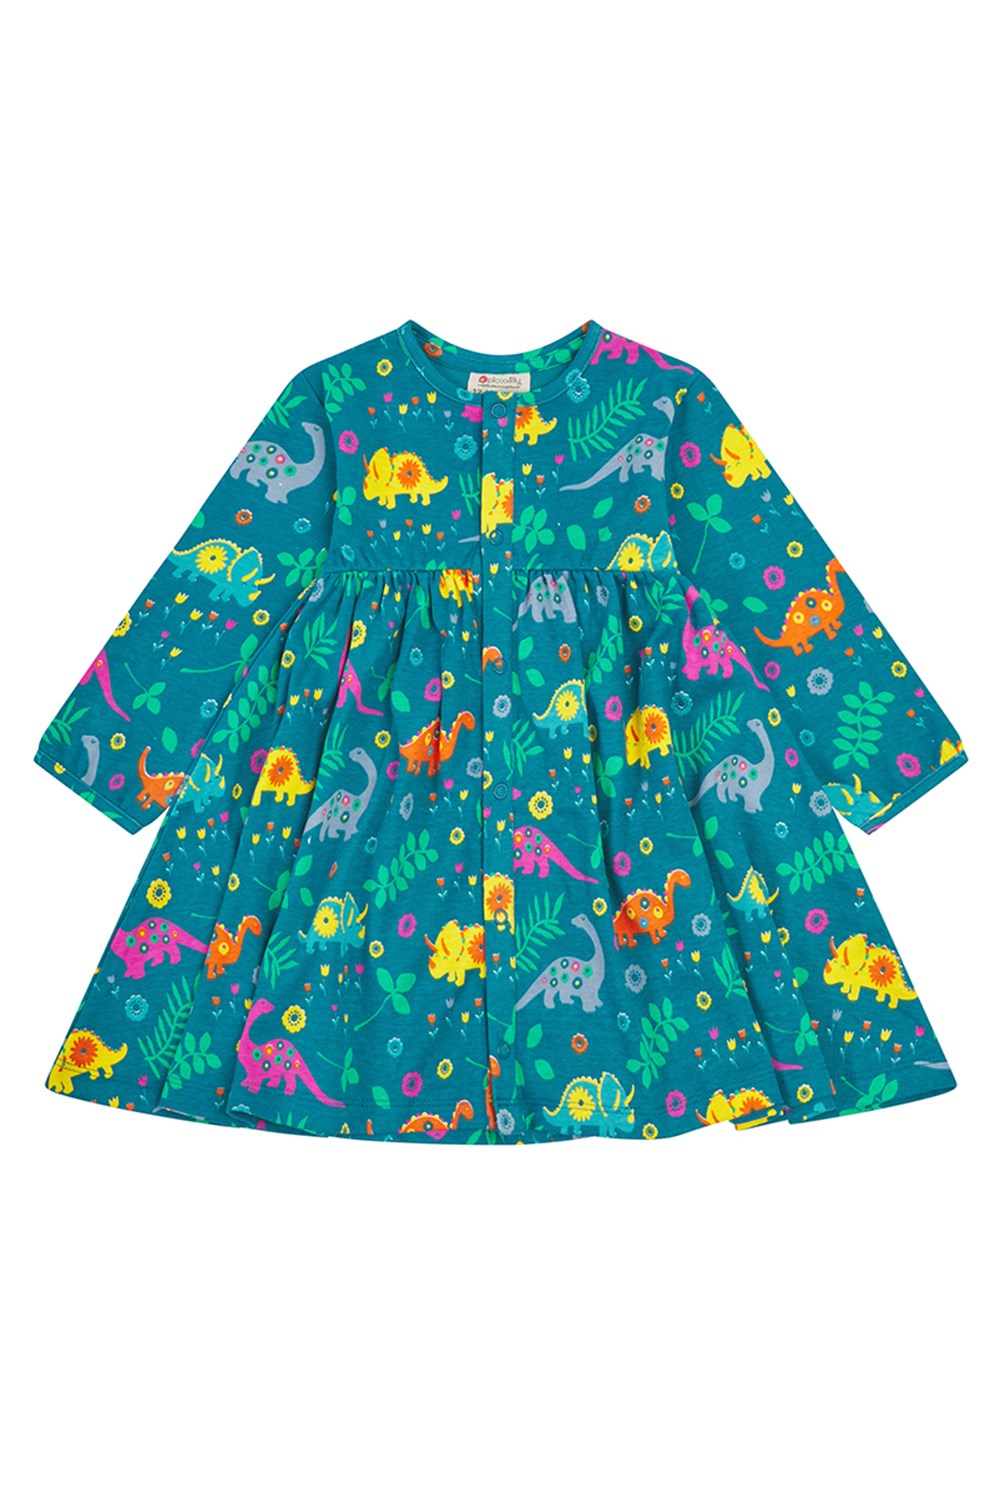 Dinosaur Kids Dress -